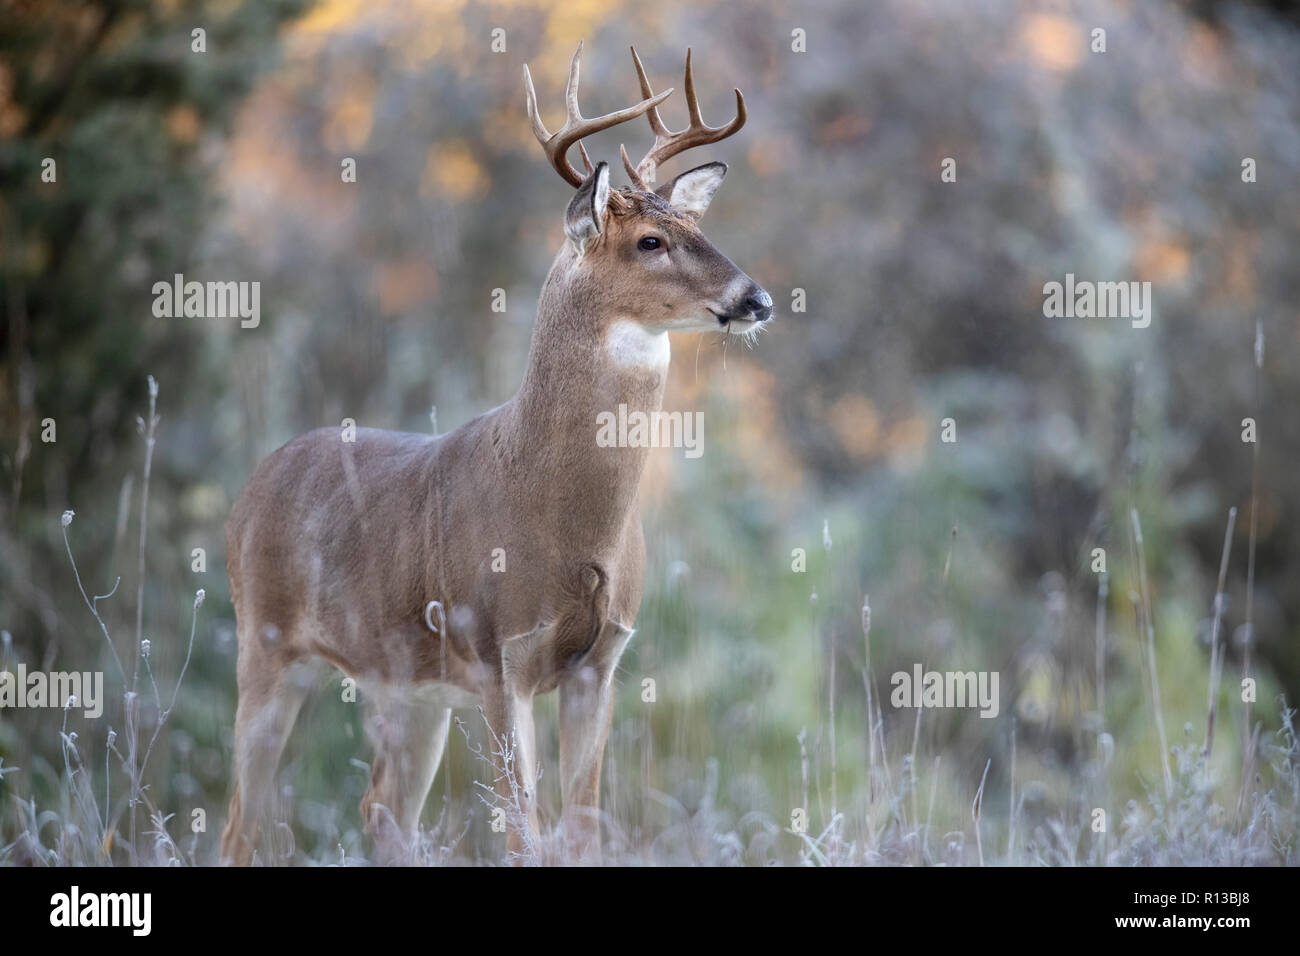 https://c8.alamy.com/compde/r13bj8/eine-warnung-buck-whitetail-deer-in-der-ferne-suchen-r13bj8.jpg